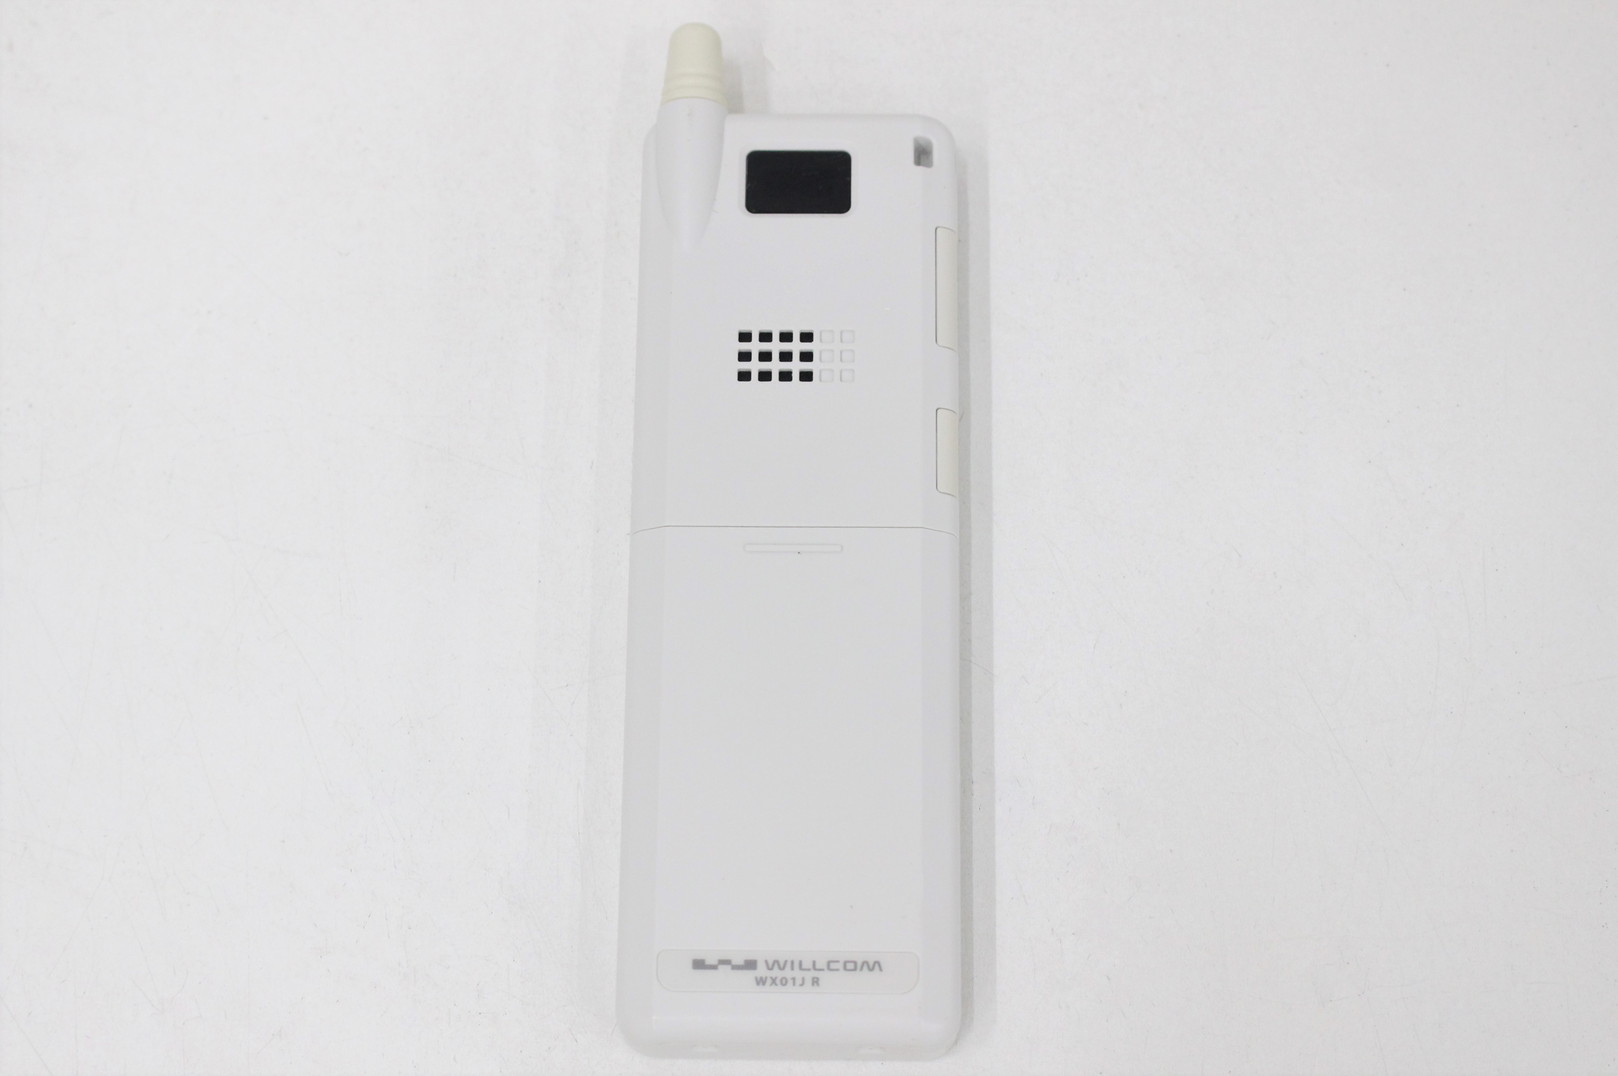 WILLCOM WX01JR 日本無線株式会社製 デジタルコードレス電話機